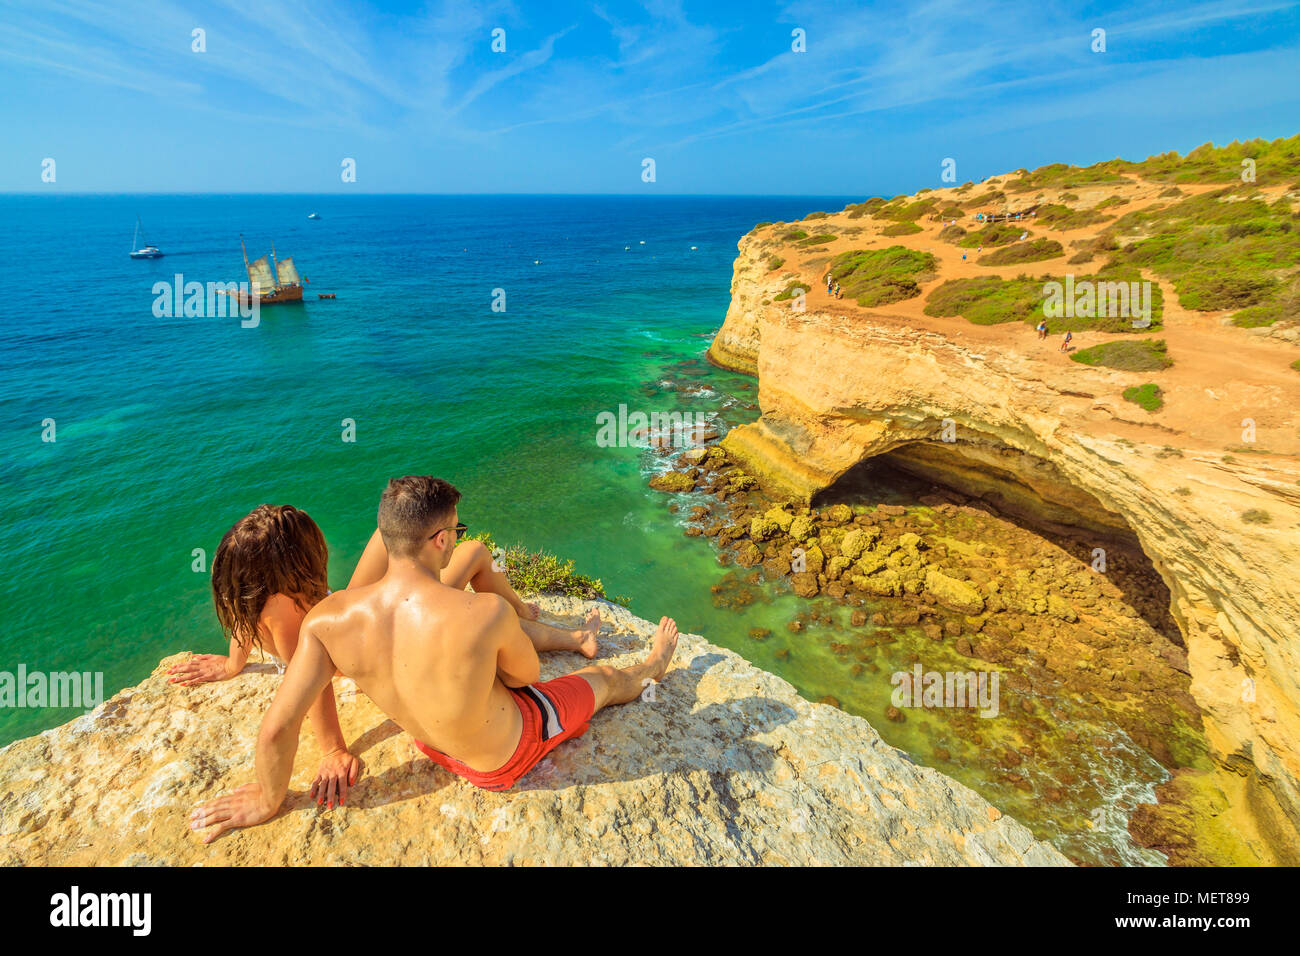 A Benagil, Portogallo - Agosto 23, 2017: lo stile di vita matura in estate vacanze, a prendere il sole sulle scogliere in Costa Algarve famoso per le sue formazioni rocciose. A Benagil grotta, una famosa grotta di mare sulla scogliera di fronte. Foto Stock